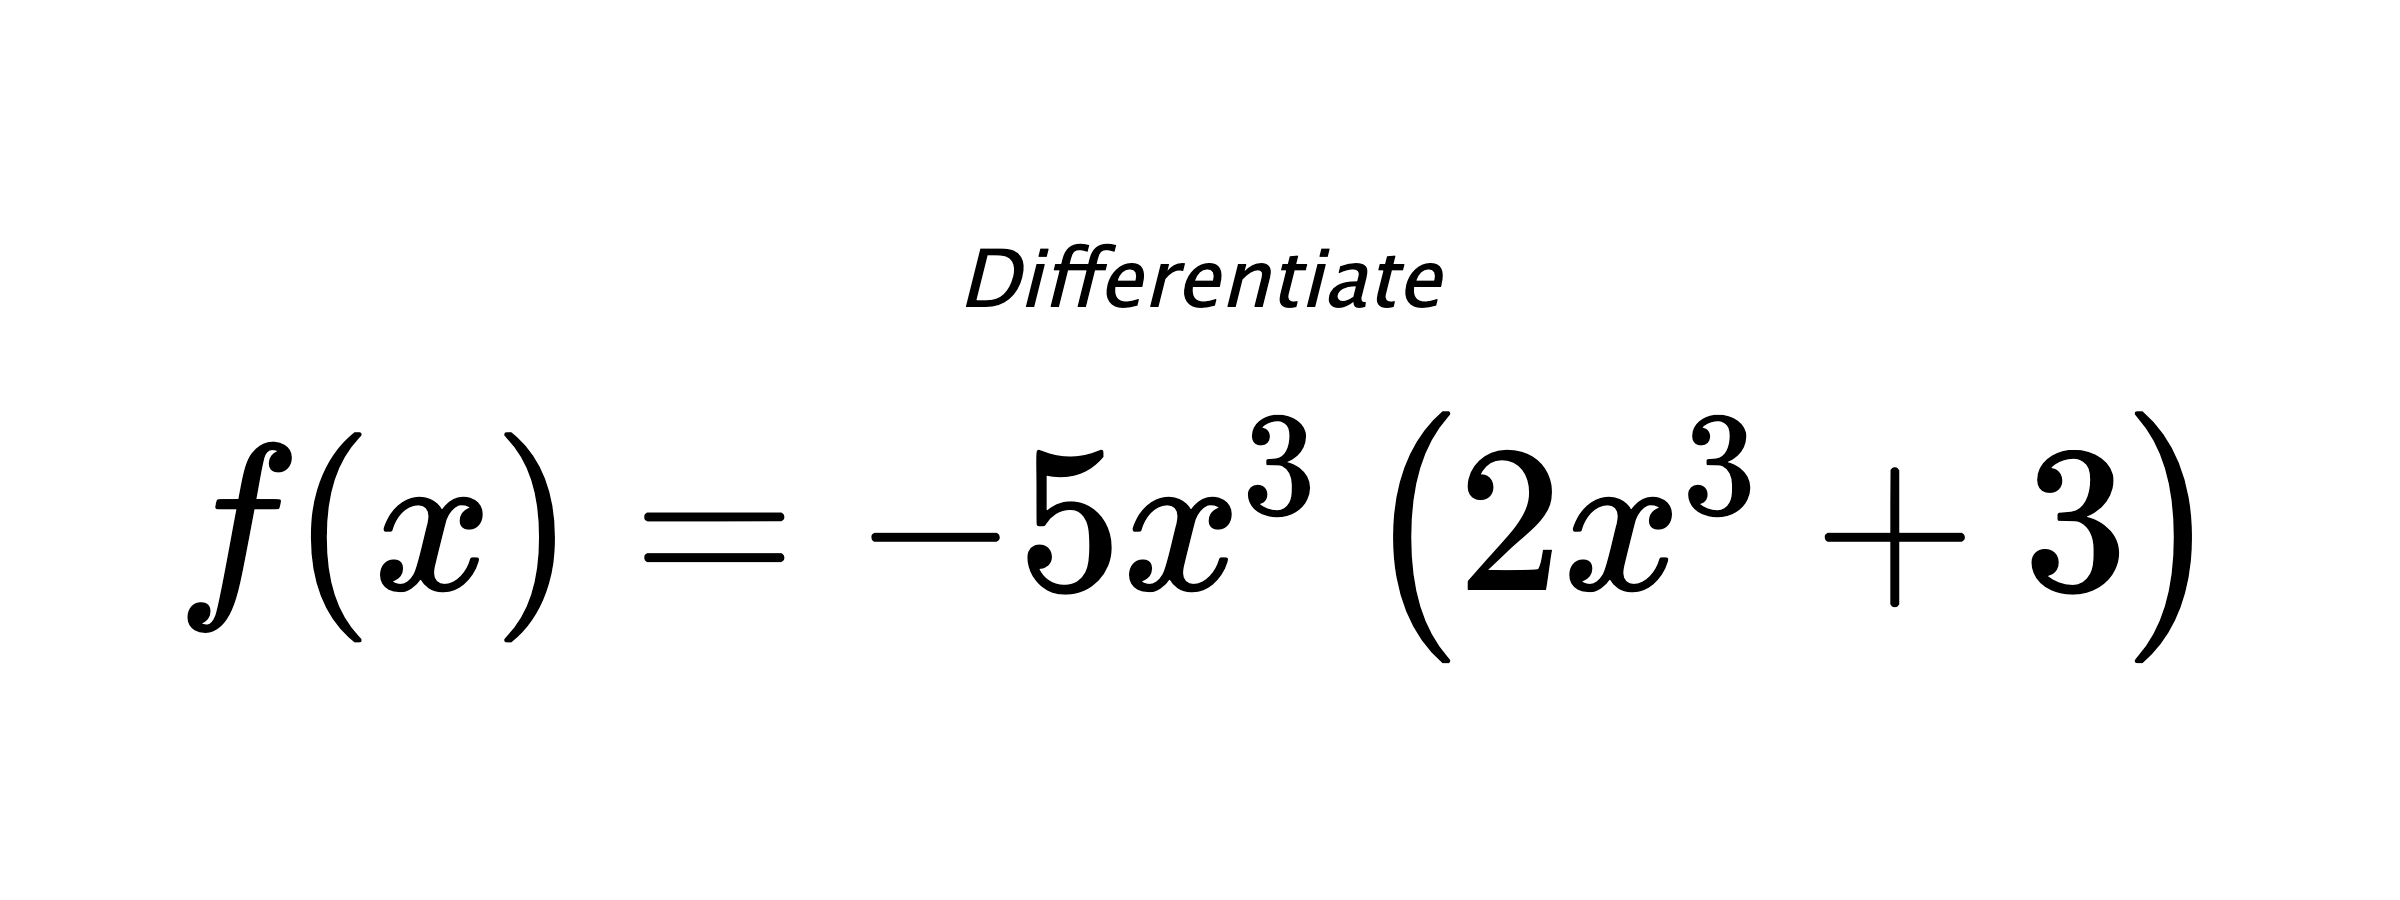 Differentiate $ f(x) = - 5 x^{3} \left(2 x^{3} + 3\right) $